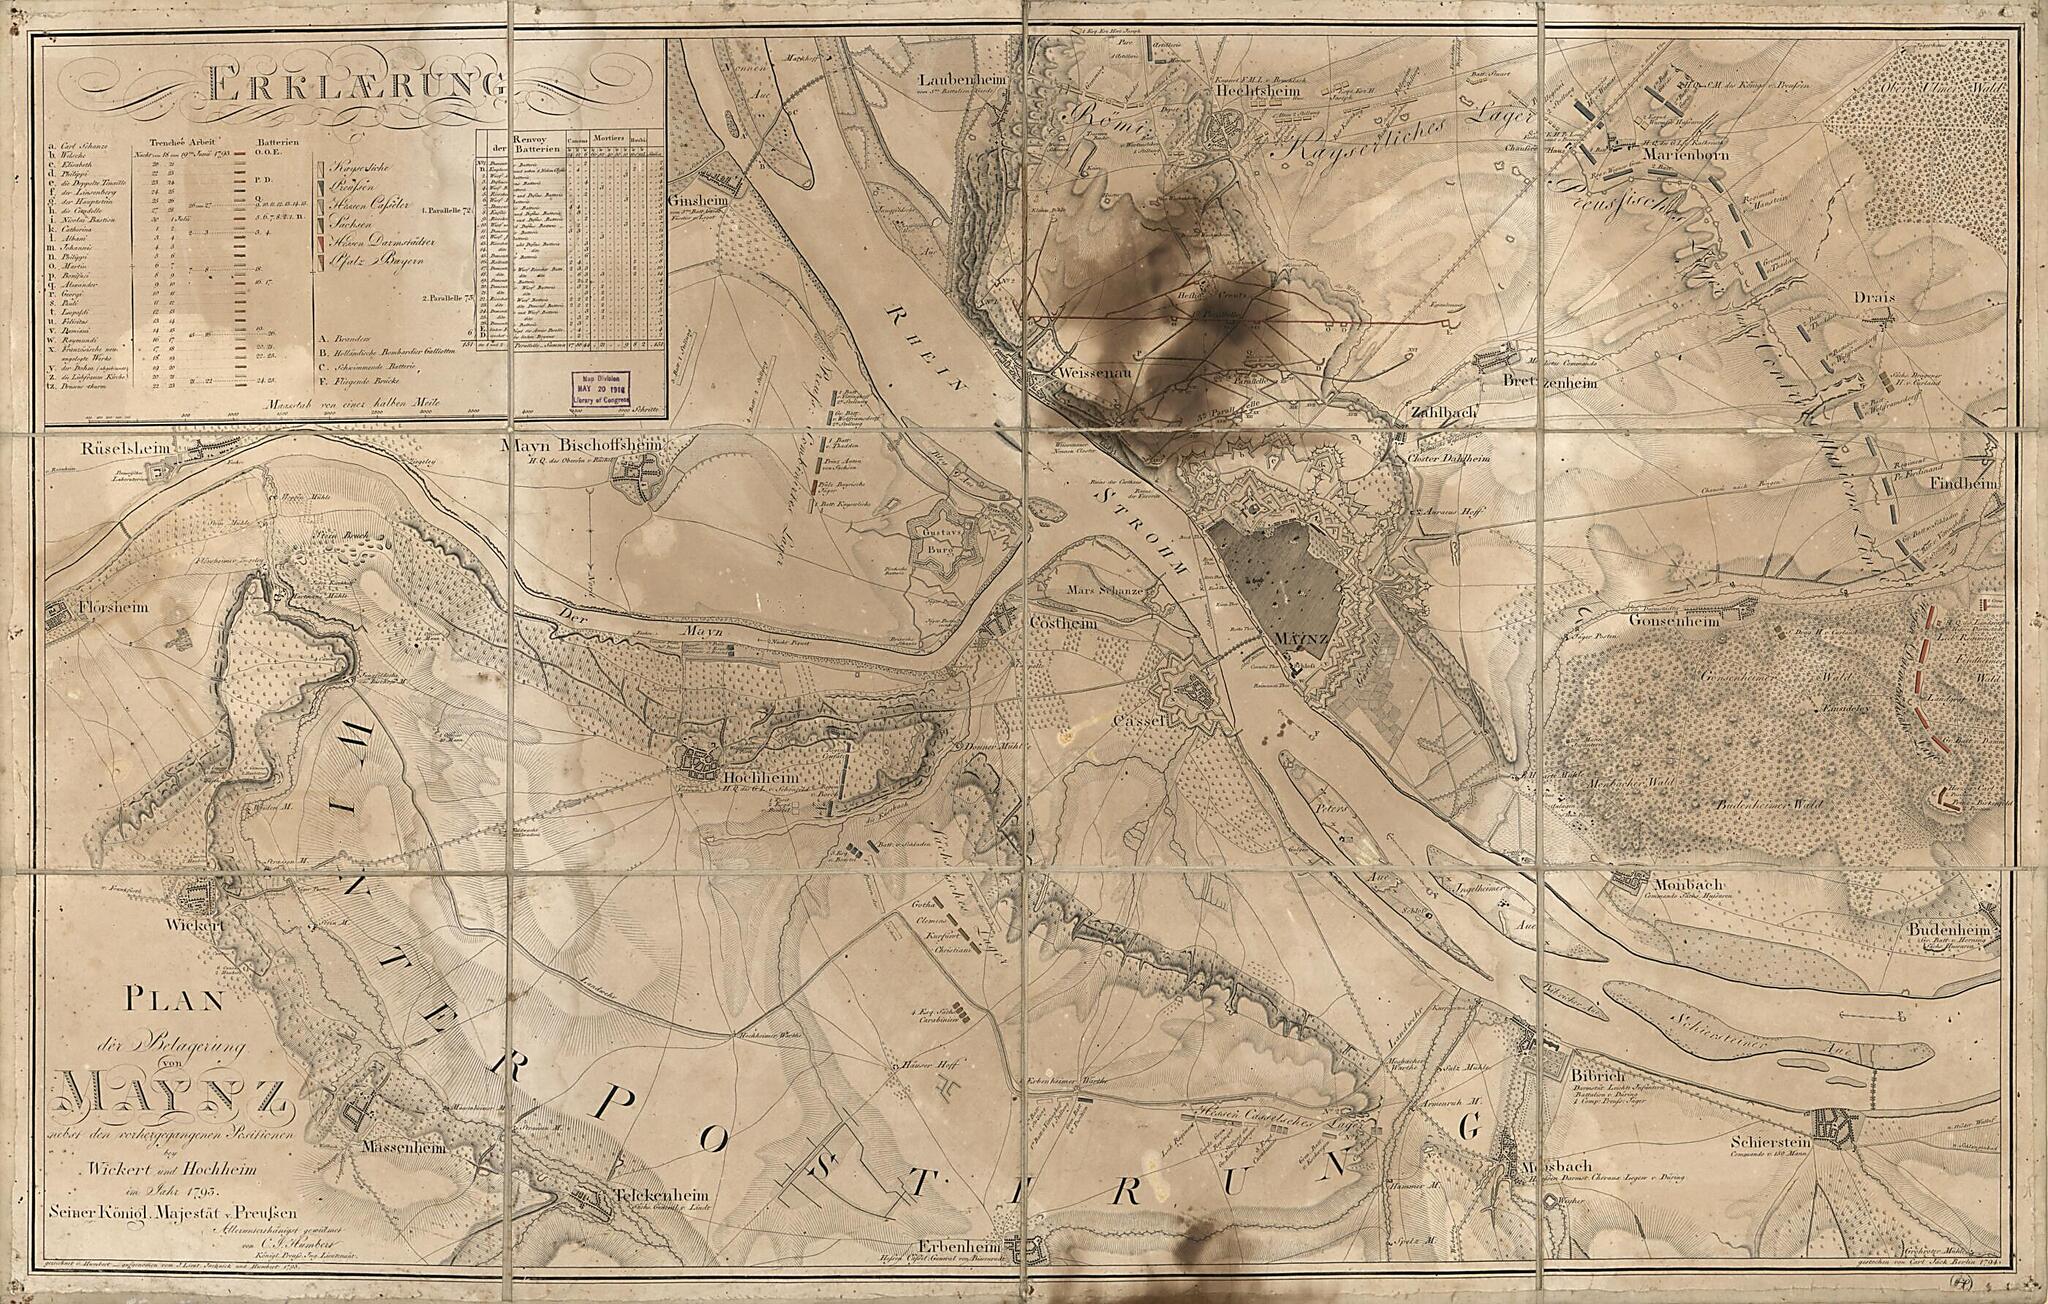 This old map of Plan Der Belagerung Von Maynz : Nebst Den Vorhergegangenen Positionen Bey Wickert Und Hochheim Im Jahr from 1793 (Environs of Mayenz) was created by Millard Fillmore, C. J. Humbert, C. (Carl) Jäck in 1793